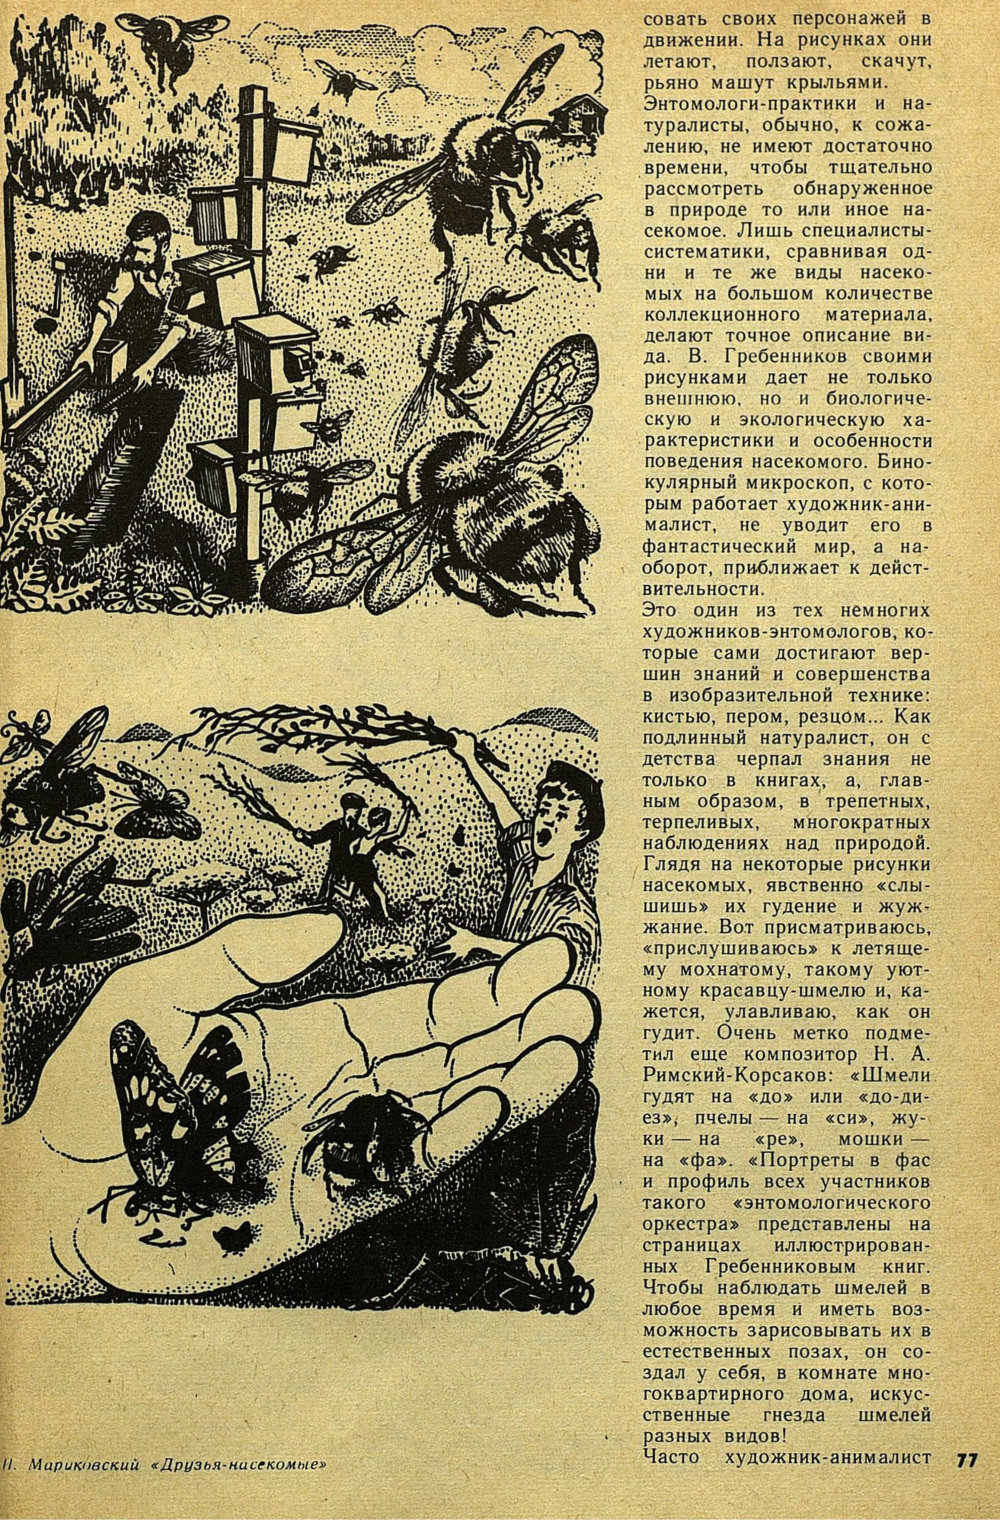 Дирижер энтомологического оркестра. Е. Бацылев. Детская литература, 1975, №9 (117), с.74-78. Фотокопия №4